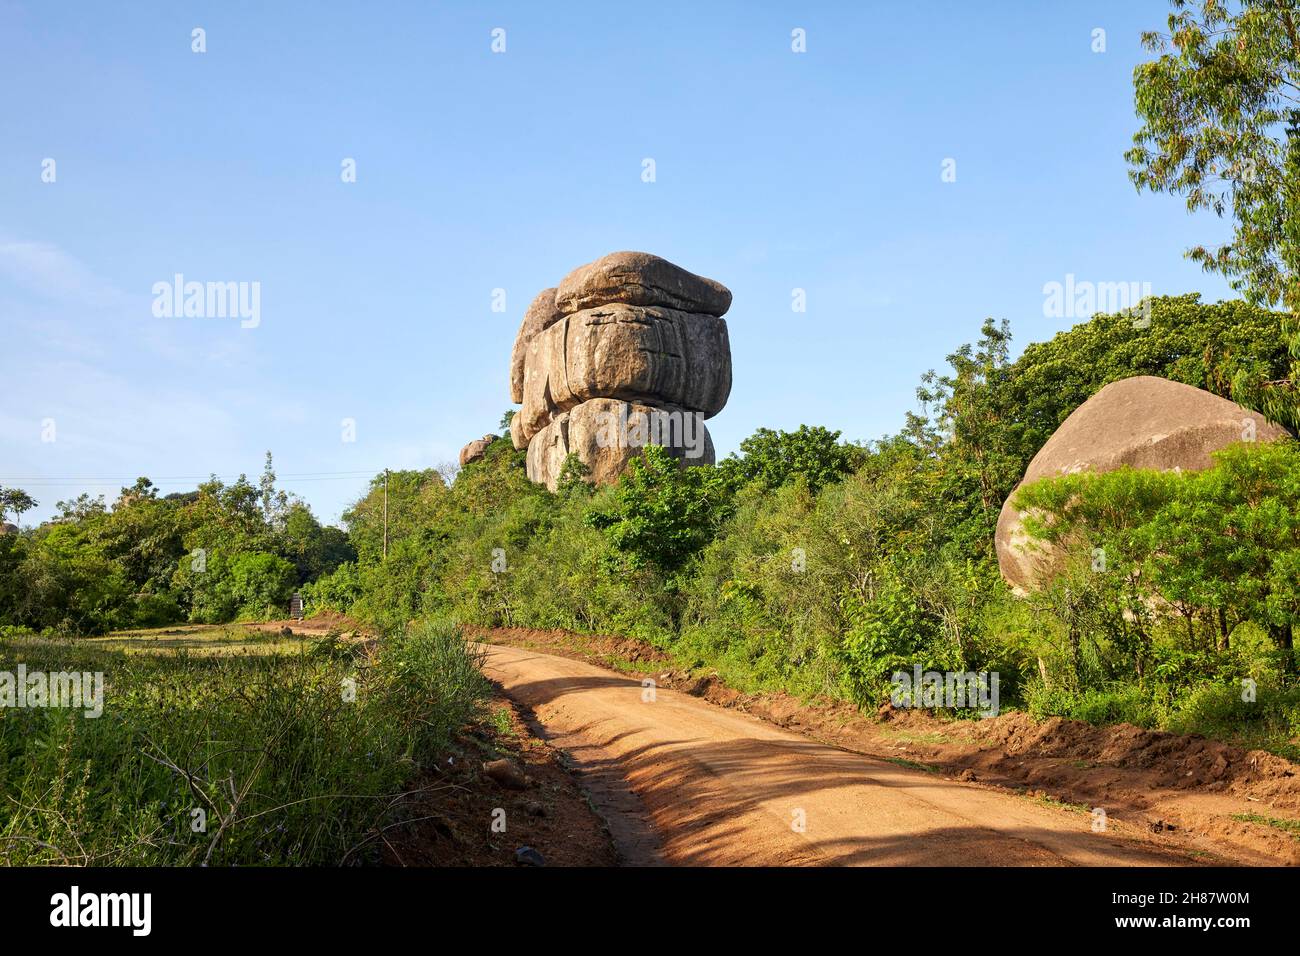 Kit Mikayi Kitmikayi Kitmikaye formación de roca en Kenia, África Foto de stock